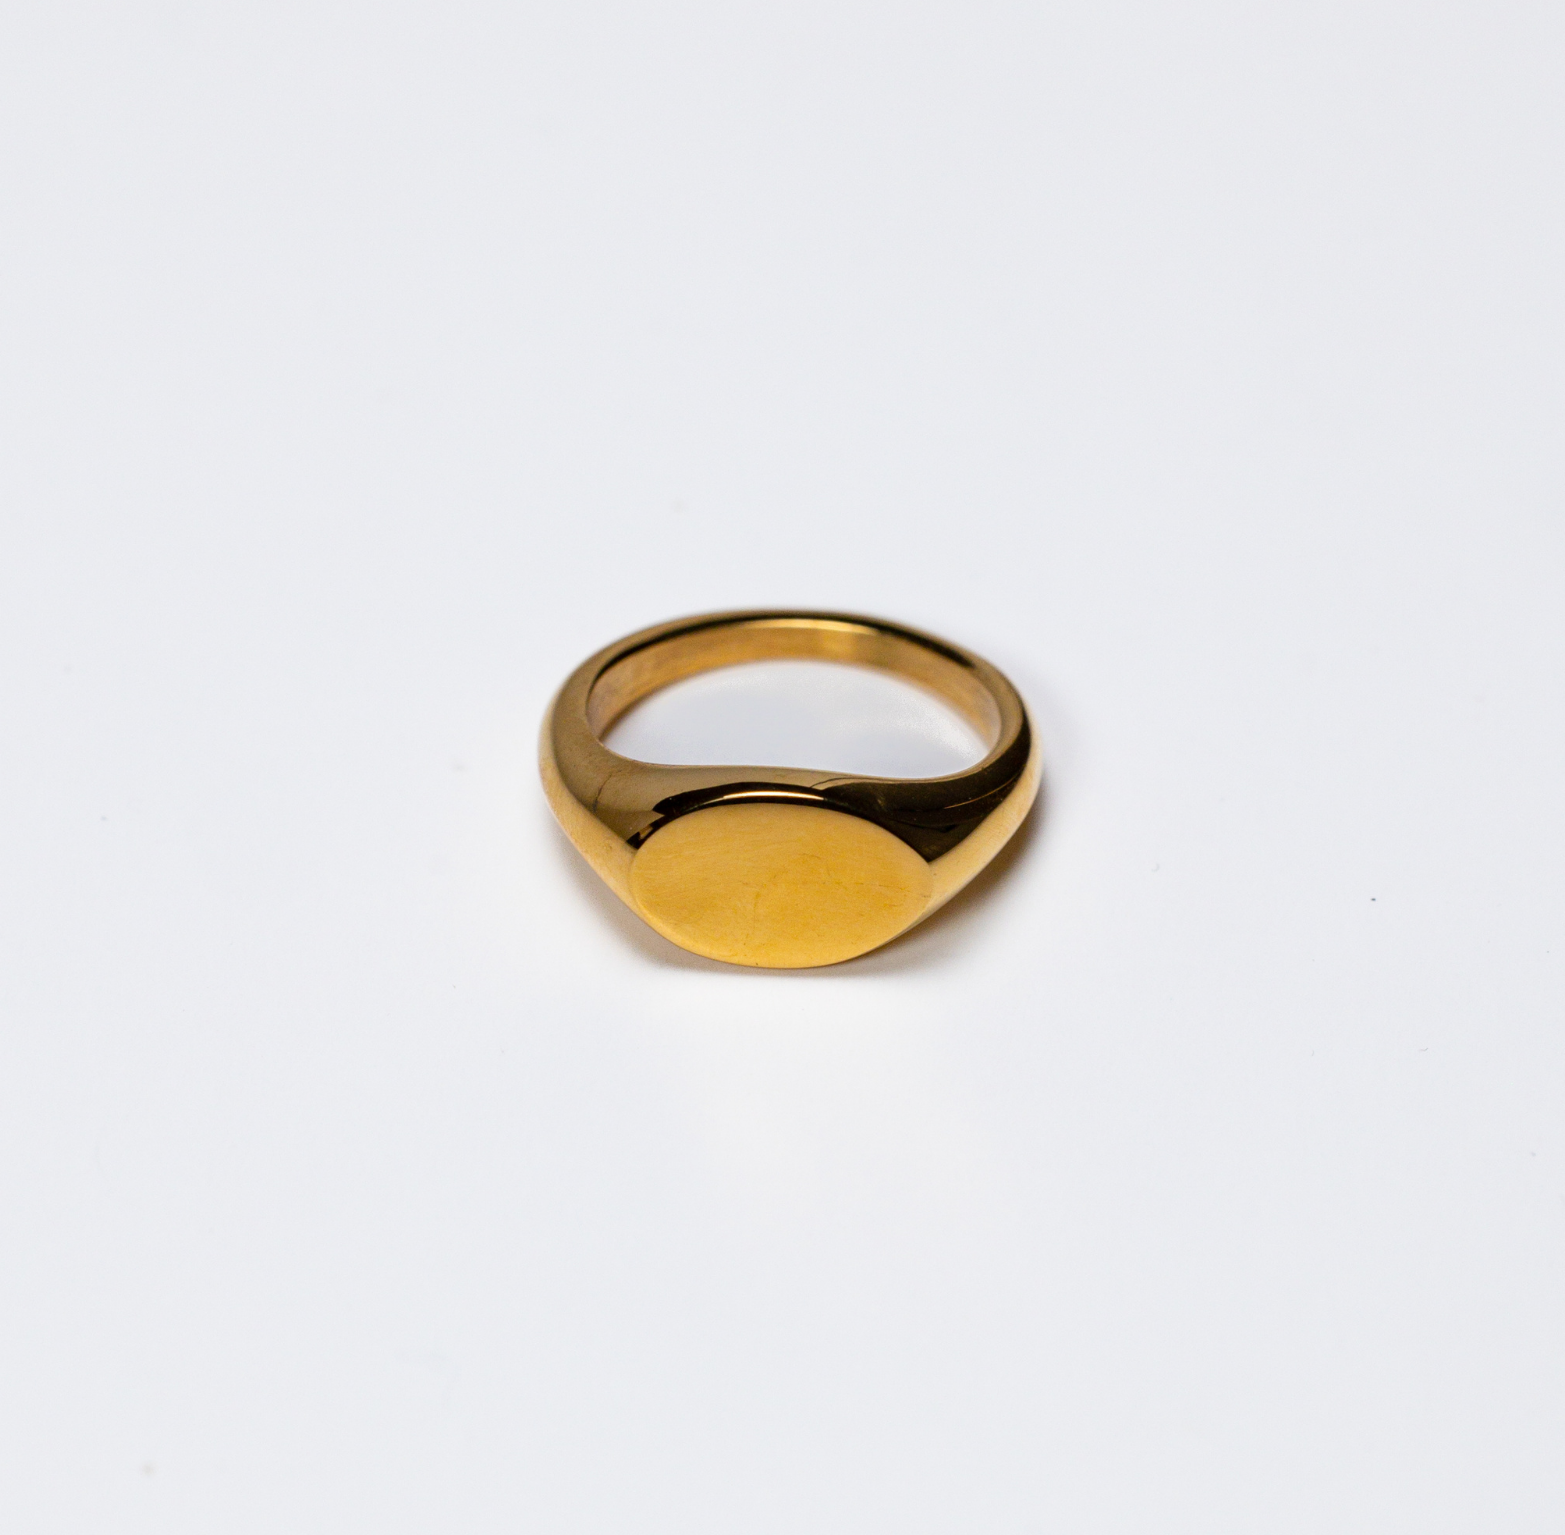 The Nishita Ring